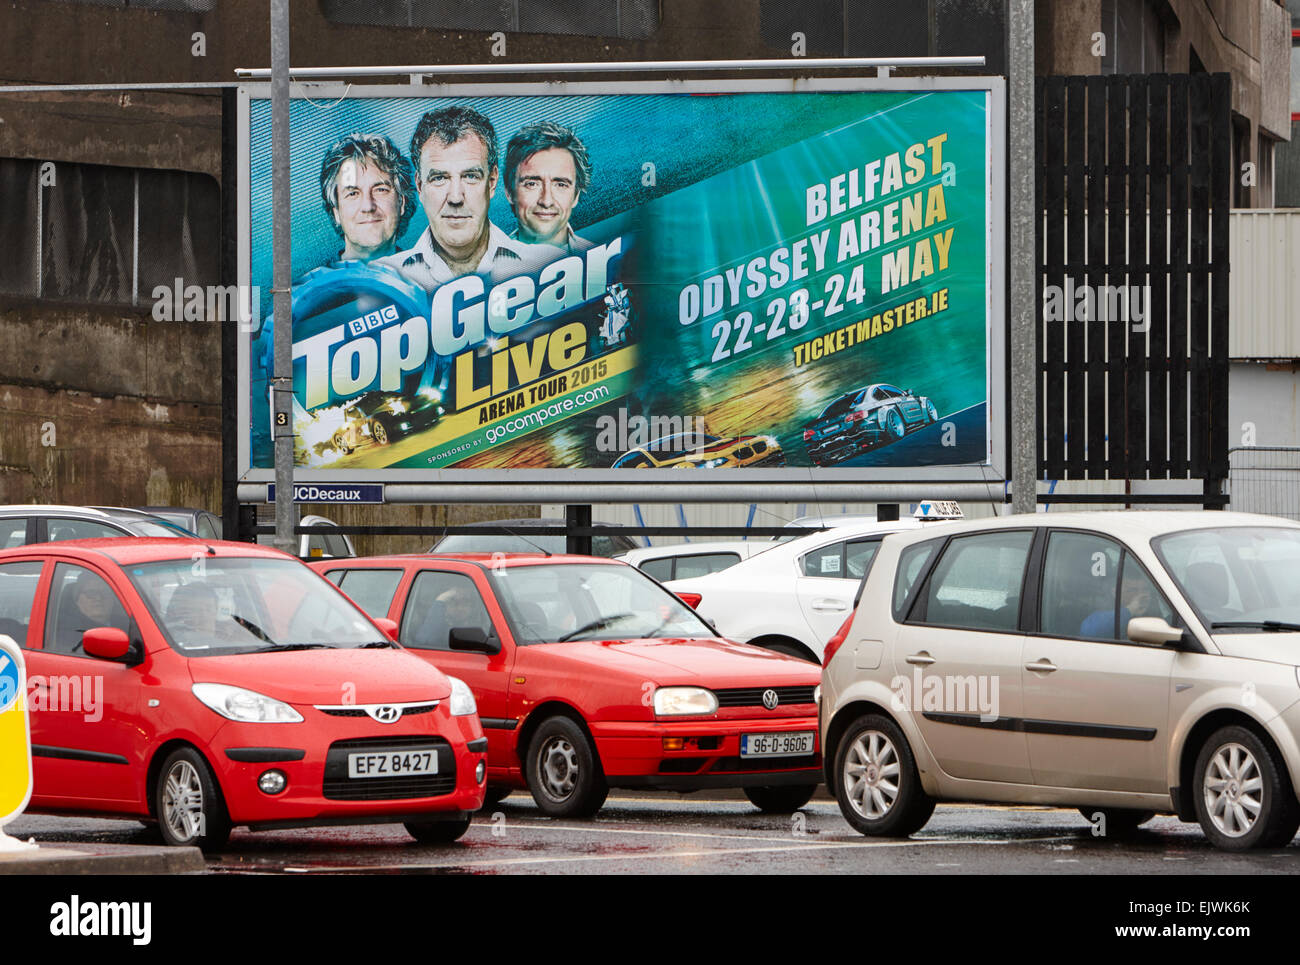 Belfast, Irlande du Nord. 06Th avr, 2015. BBC live TopGear publicité mettant en vedette Jeremy Clarkson toujours sur l'affichage dans le centre de Belfast de la publicité pour leurs show en mai 2015. Credit : Radharc Images/Alamy Live News Banque D'Images